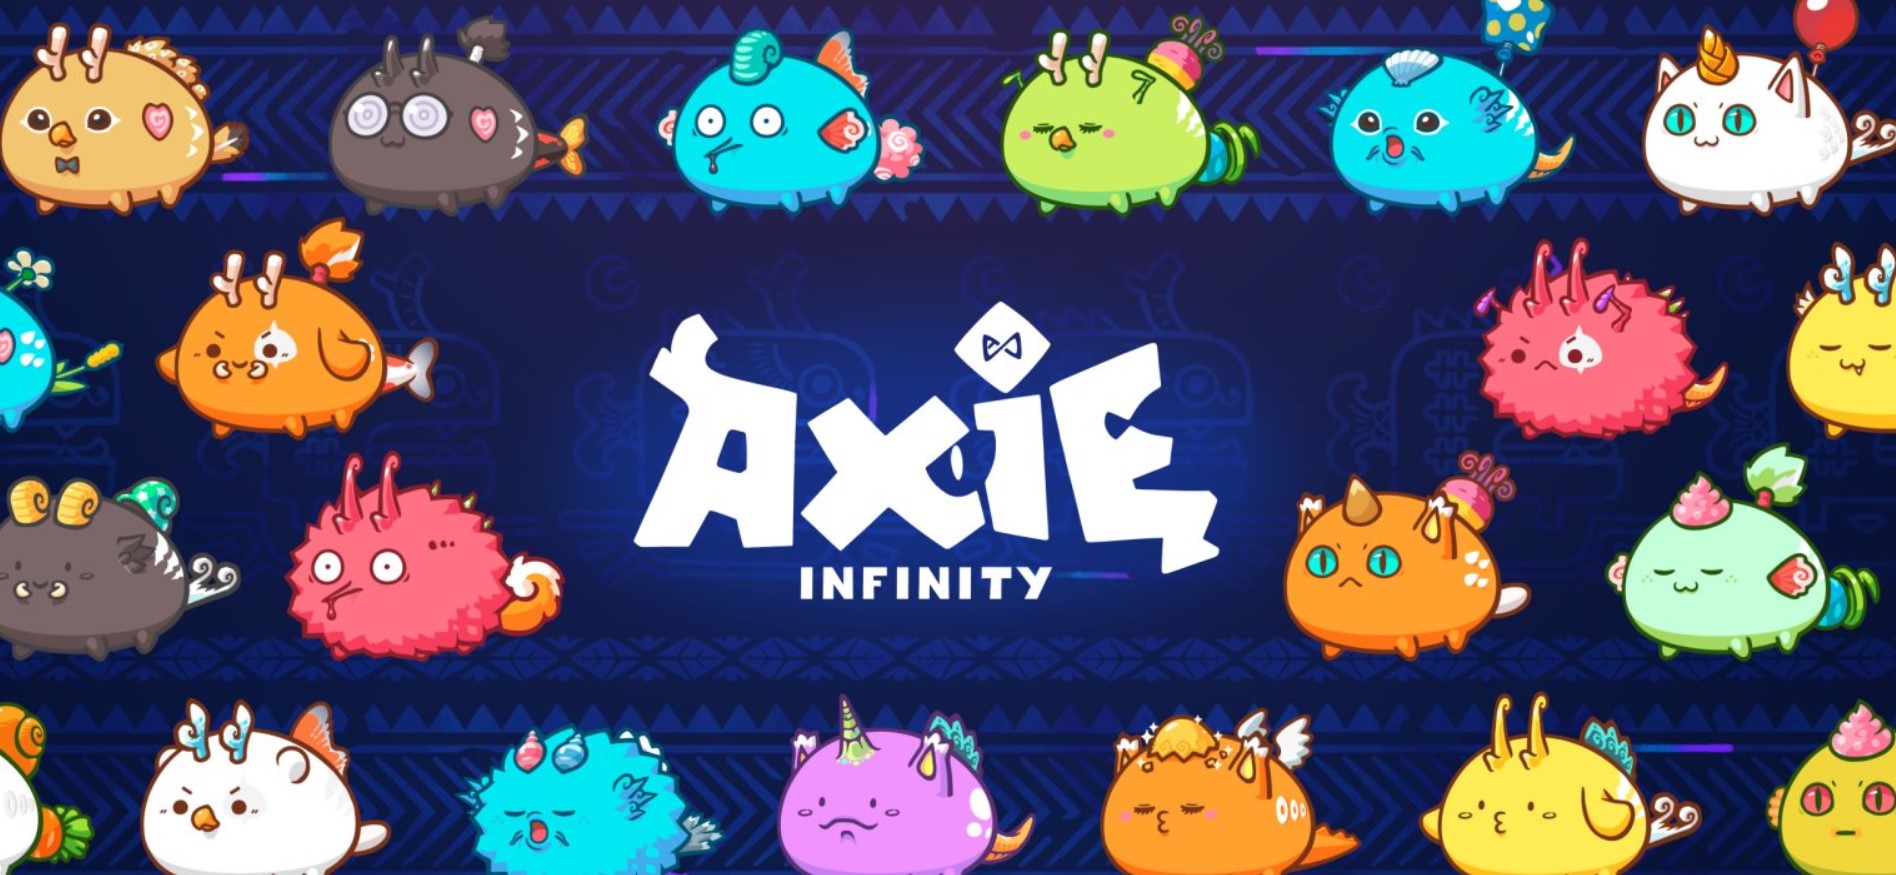 Axie Infinity - az idei év legnépszerűbb blokklnc jtéka